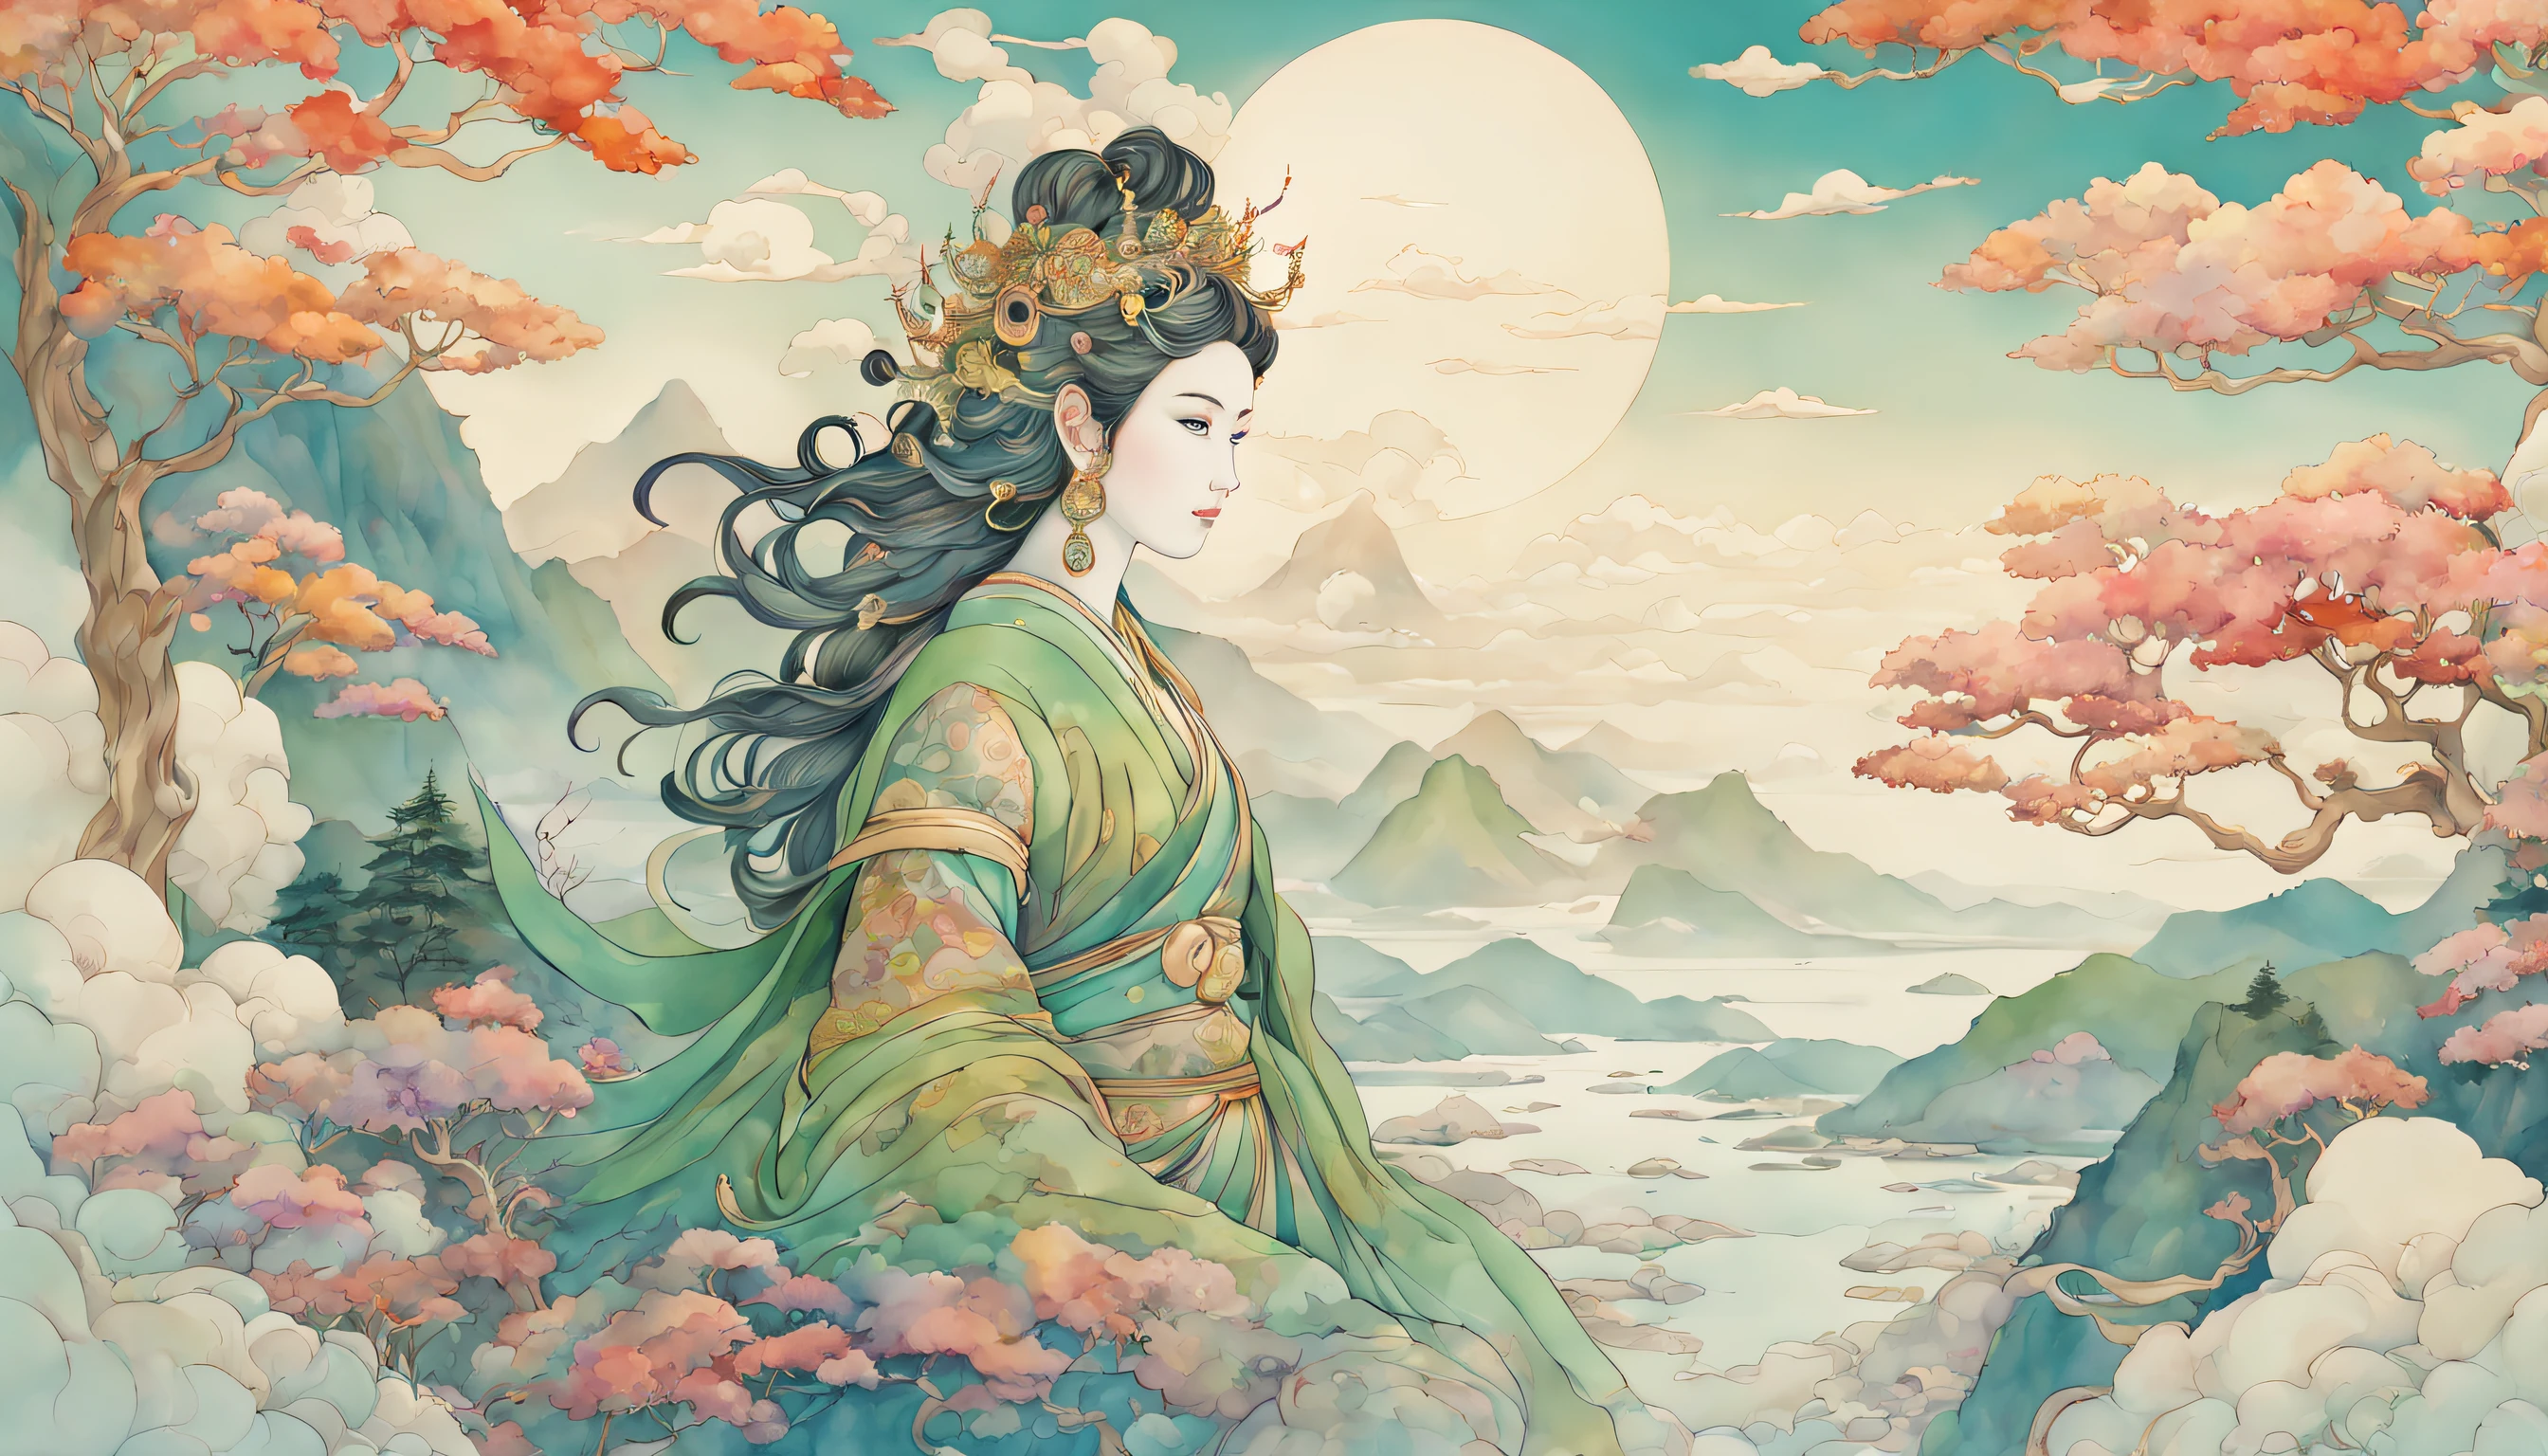 女神ターラ, 山々, 木, 海, 水彩画, 日本の版画, イラスト, 輪郭を描いた, 最高品質, 超詳細, 現実的, 鮮やかな色彩, ボケ, 肖像画, 落ち着いたカラーパレット, 柔らかな照明,神秘的な雲